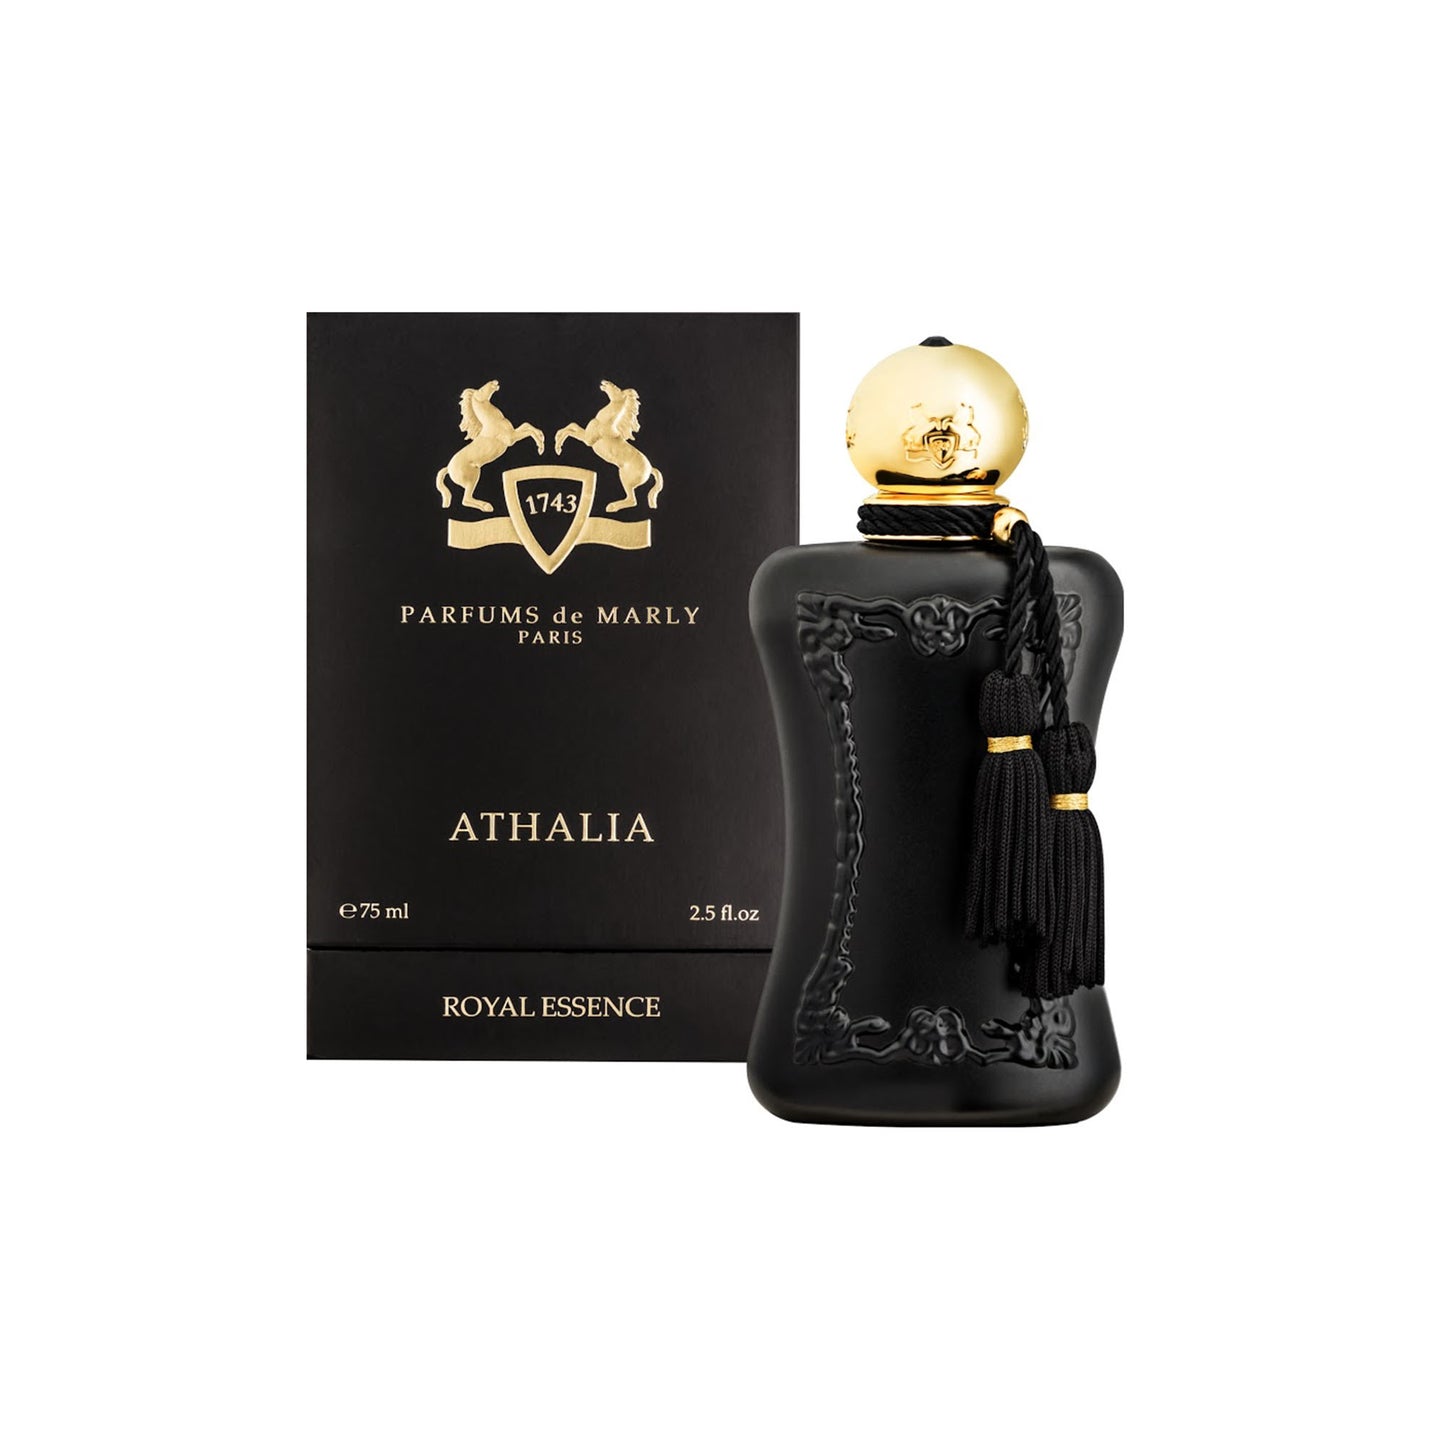 ATHALIA 1.2ml Sample Vial - Eau de Parfum